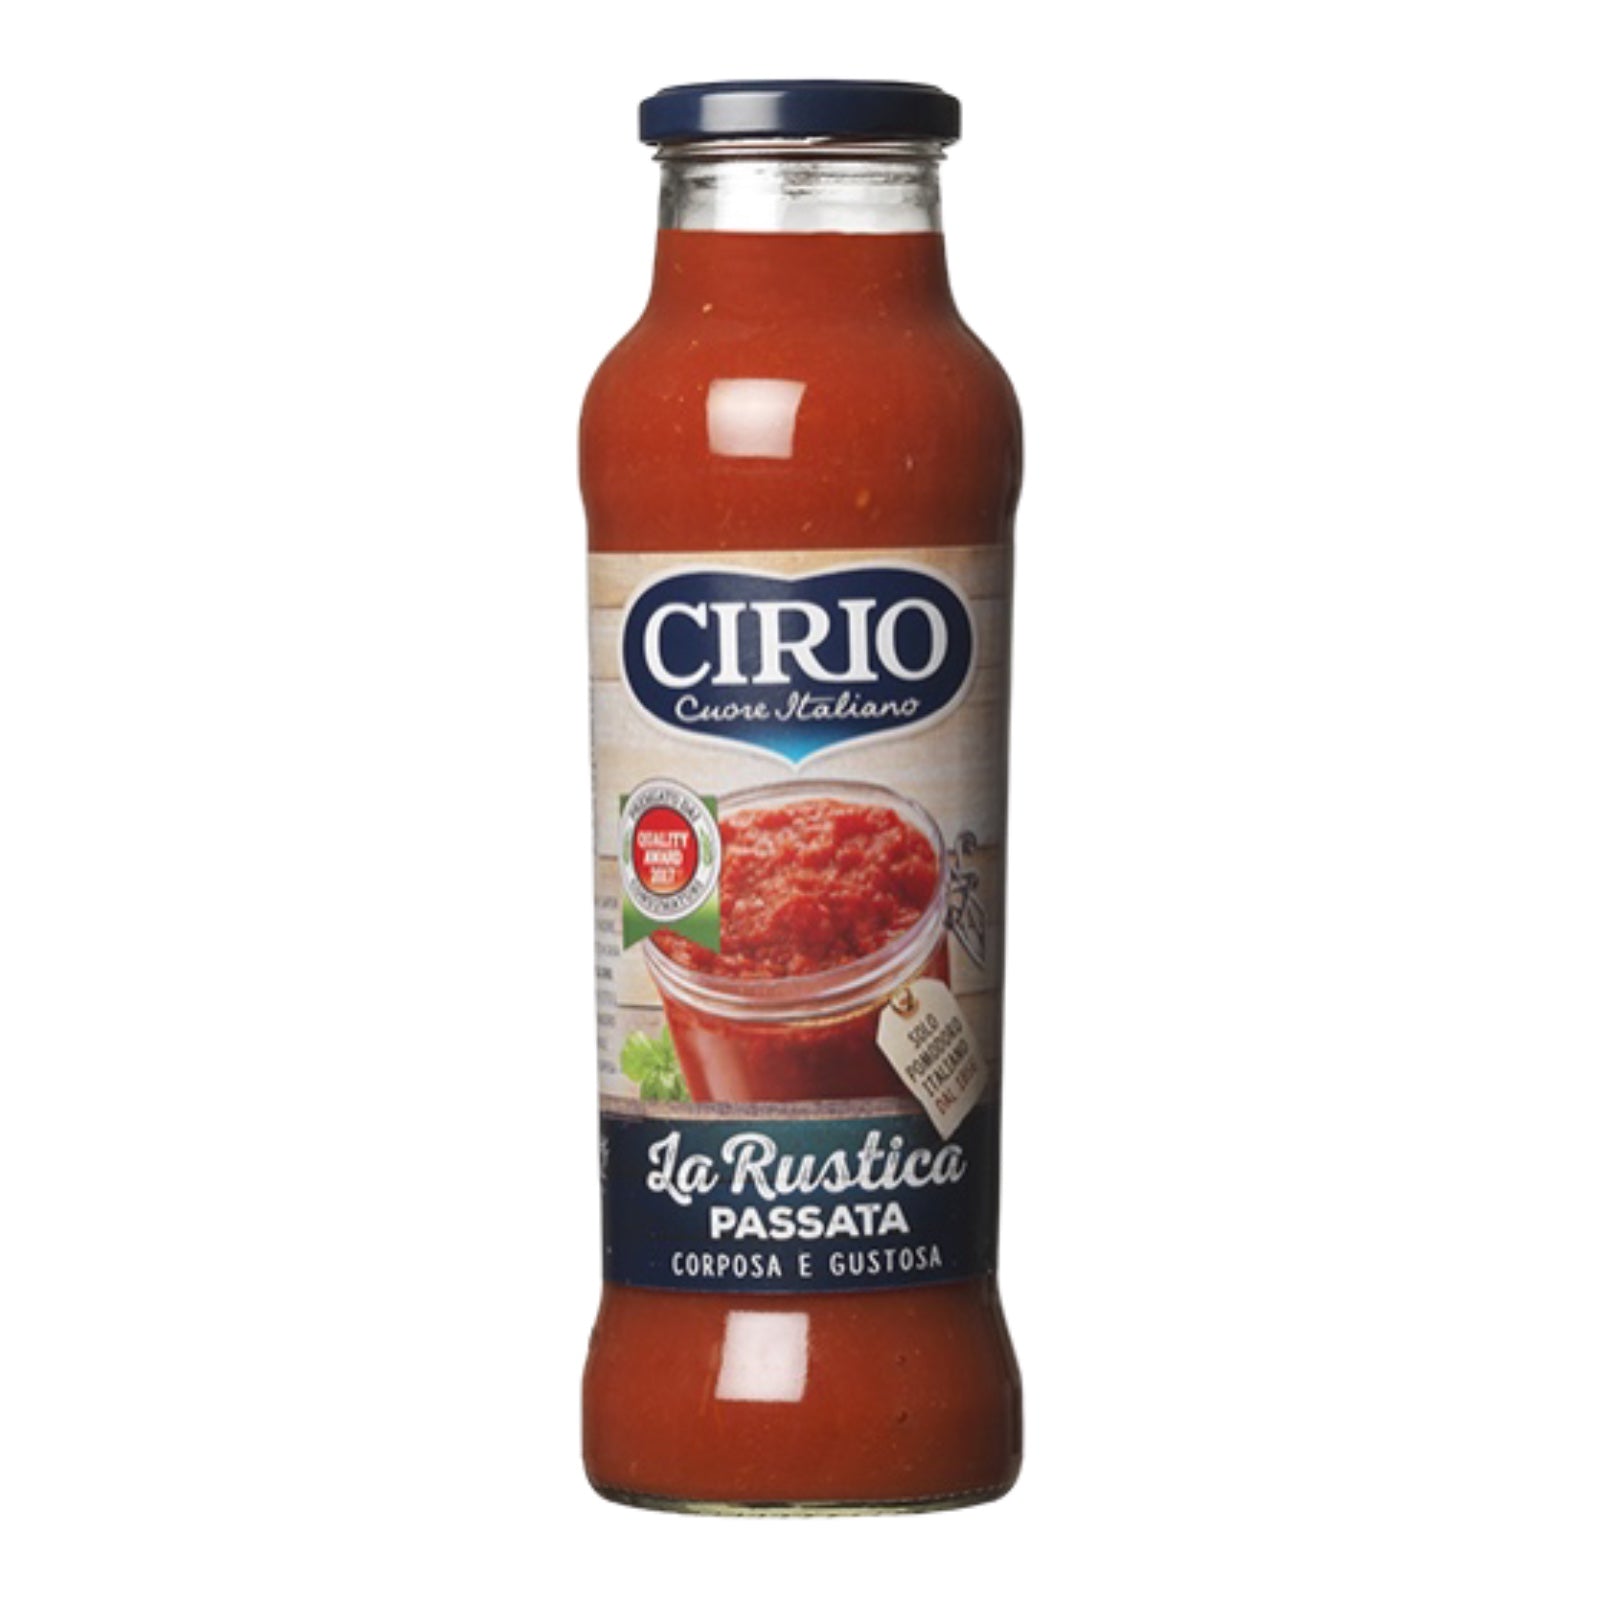 Cirio passata rustica tomato puree 680g (Max 2 jars per order)